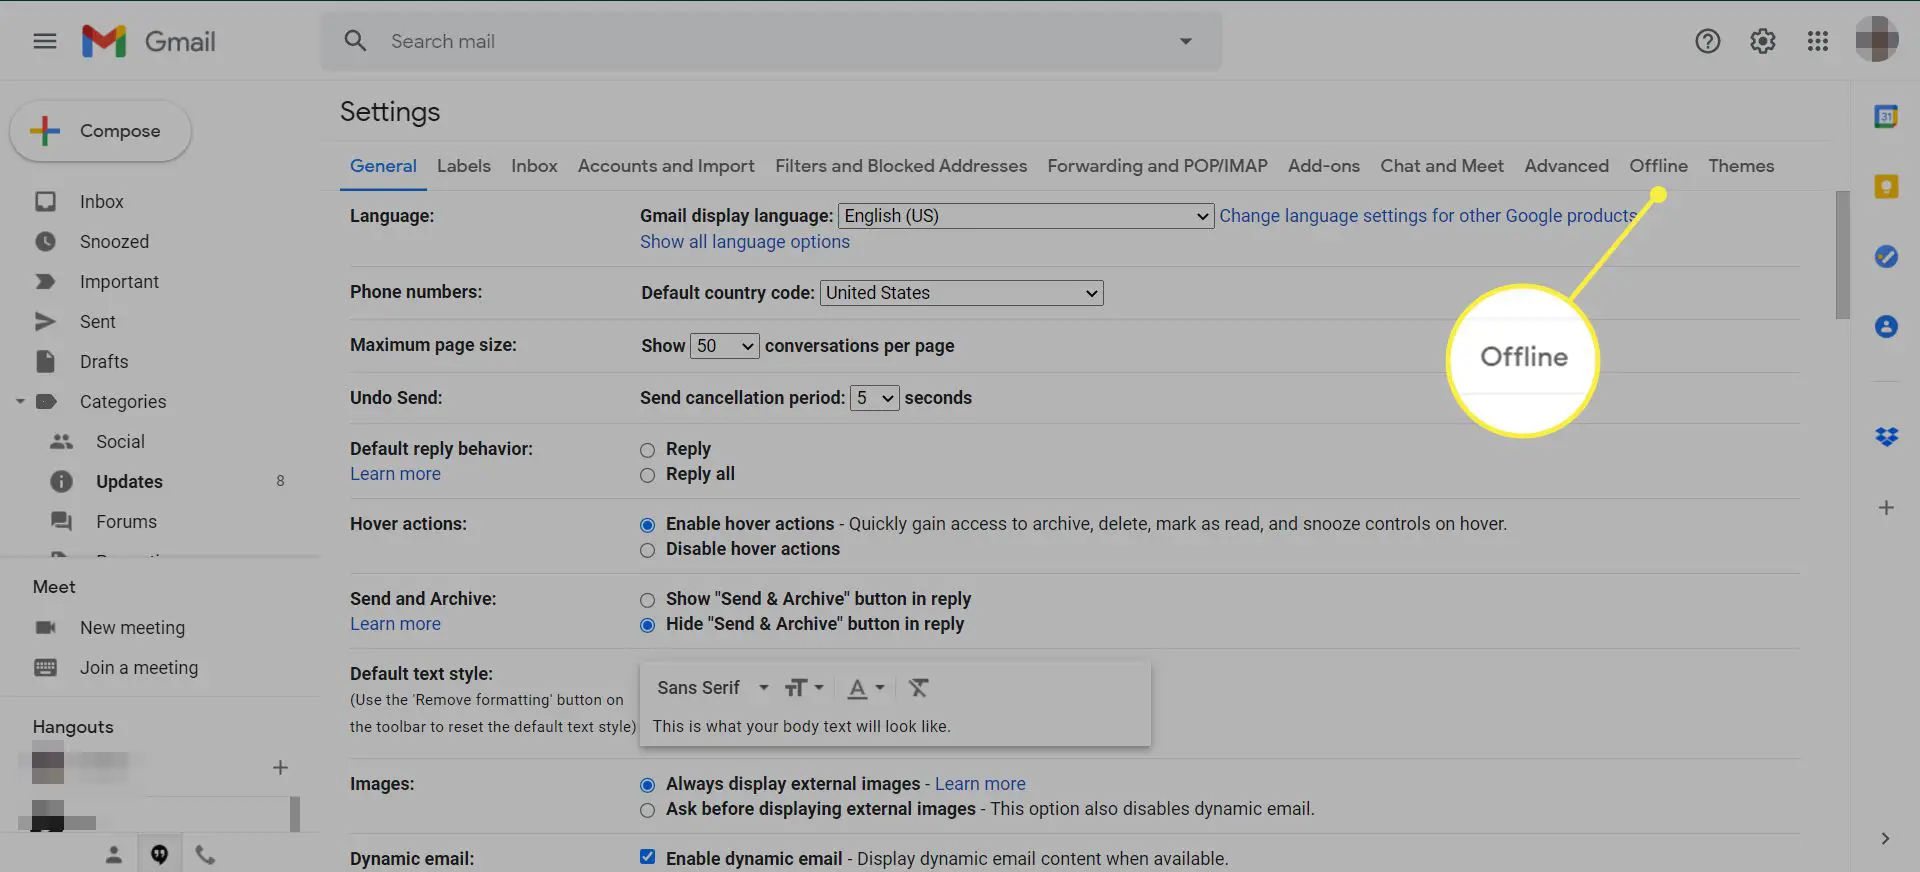 Configurações do Gmail com a guia Off-line destacada